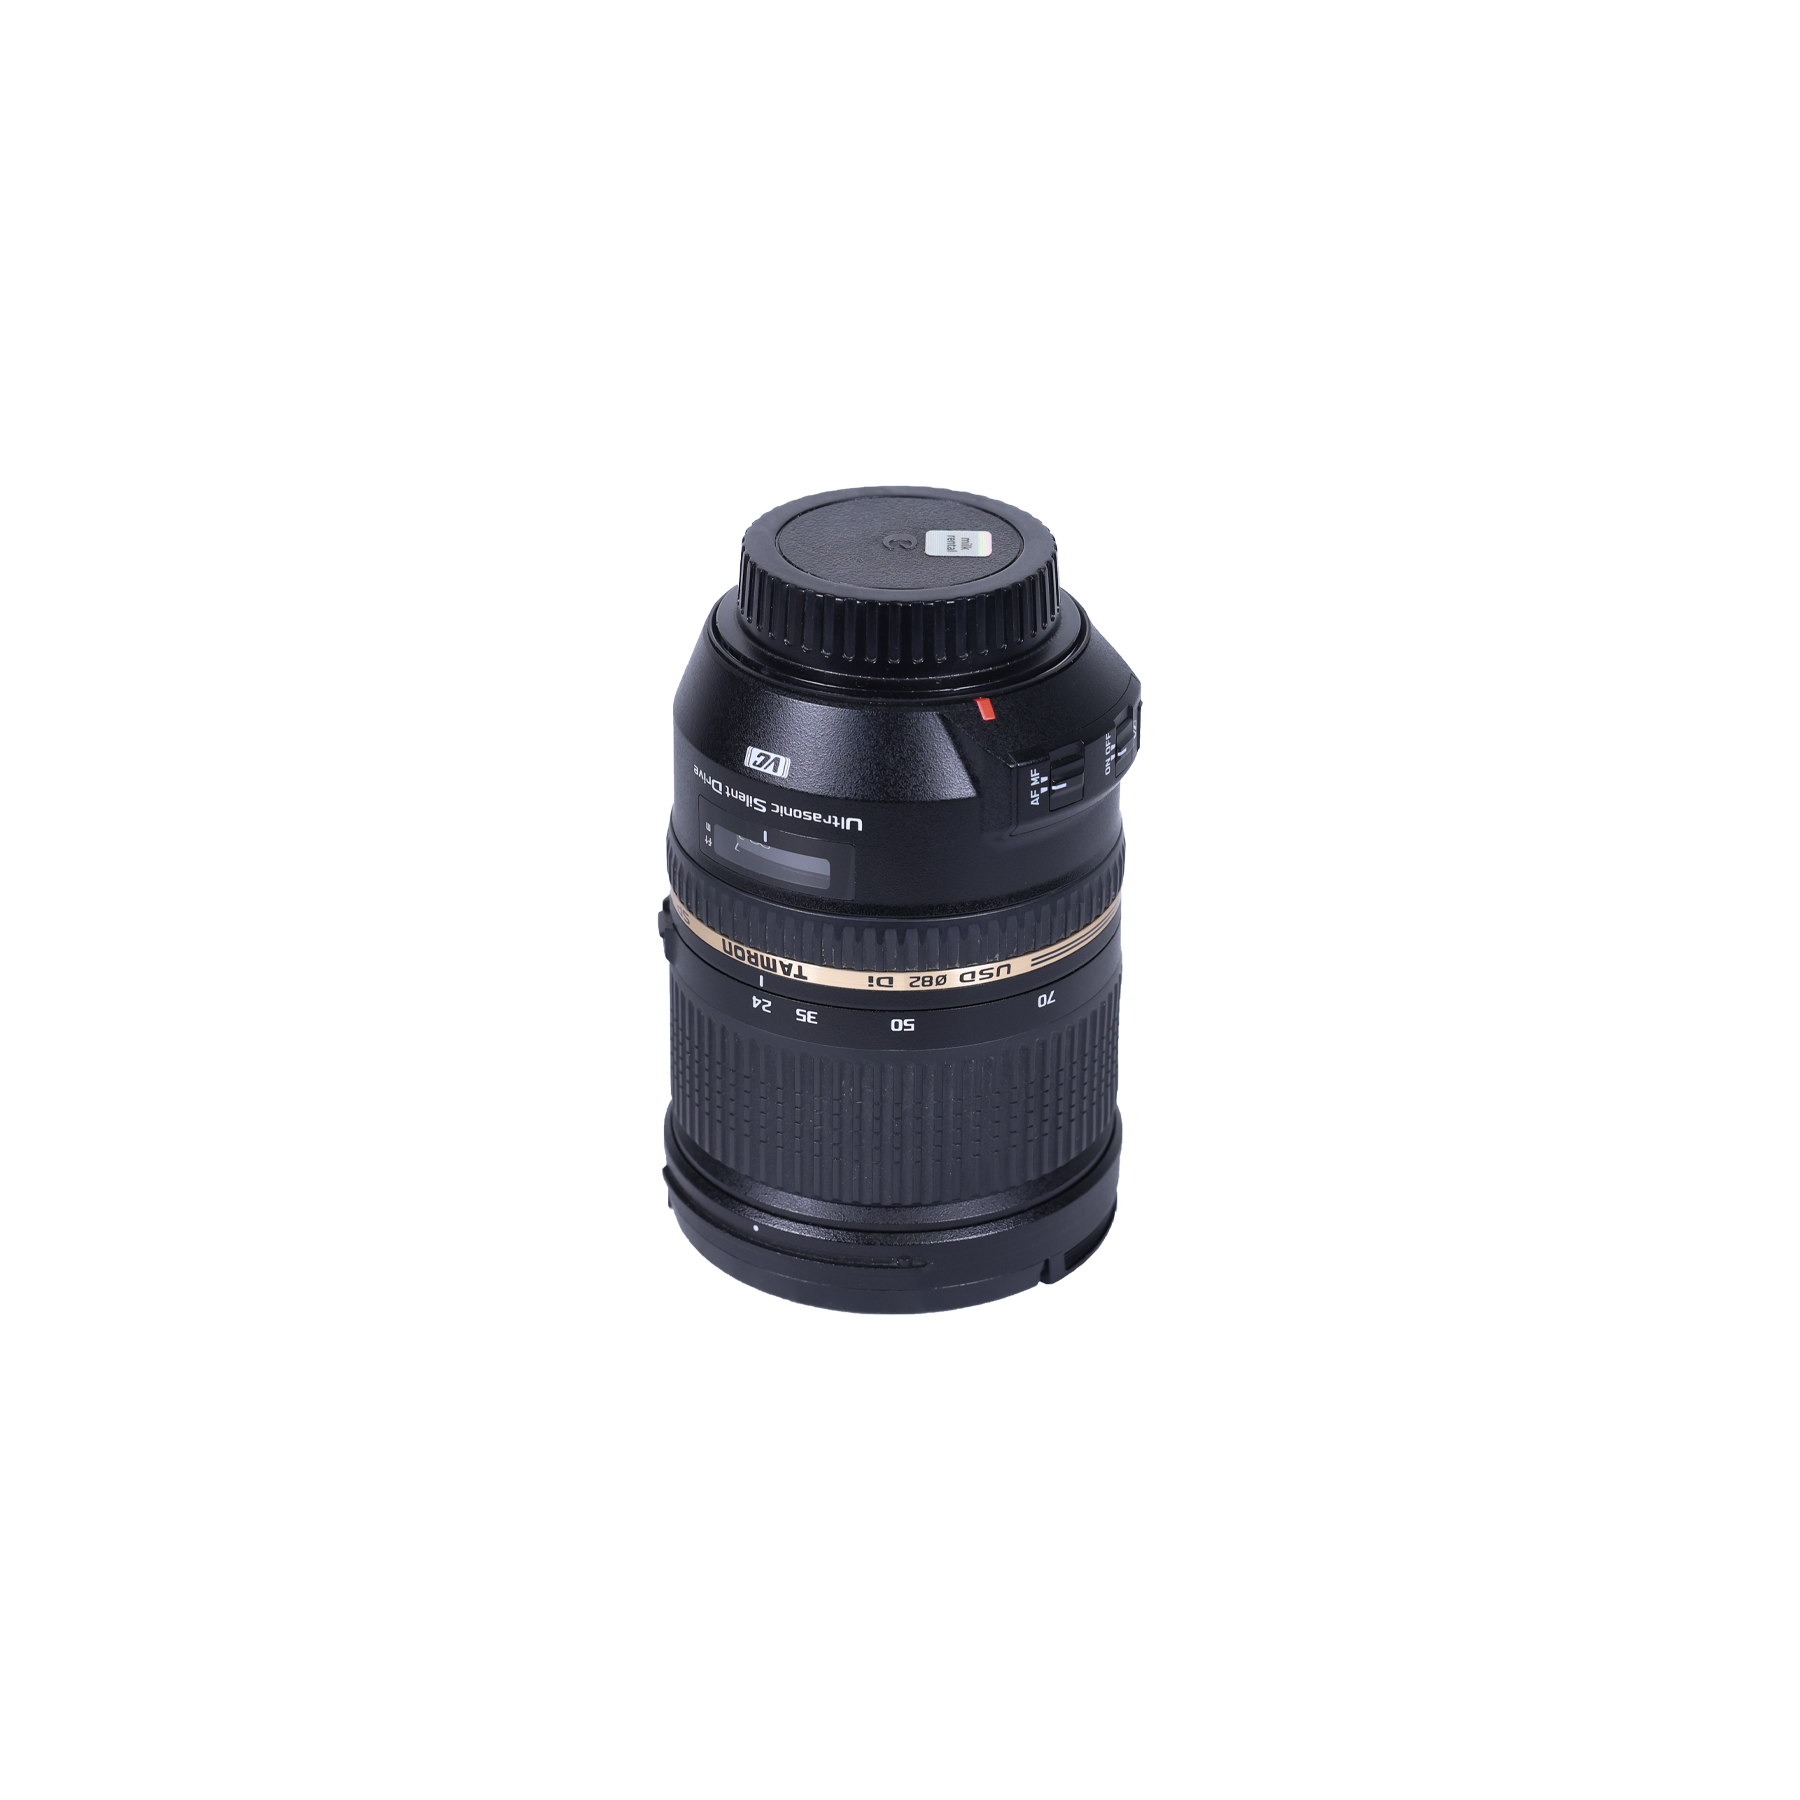 Tamron 24-70mm EF F2.8 Lens